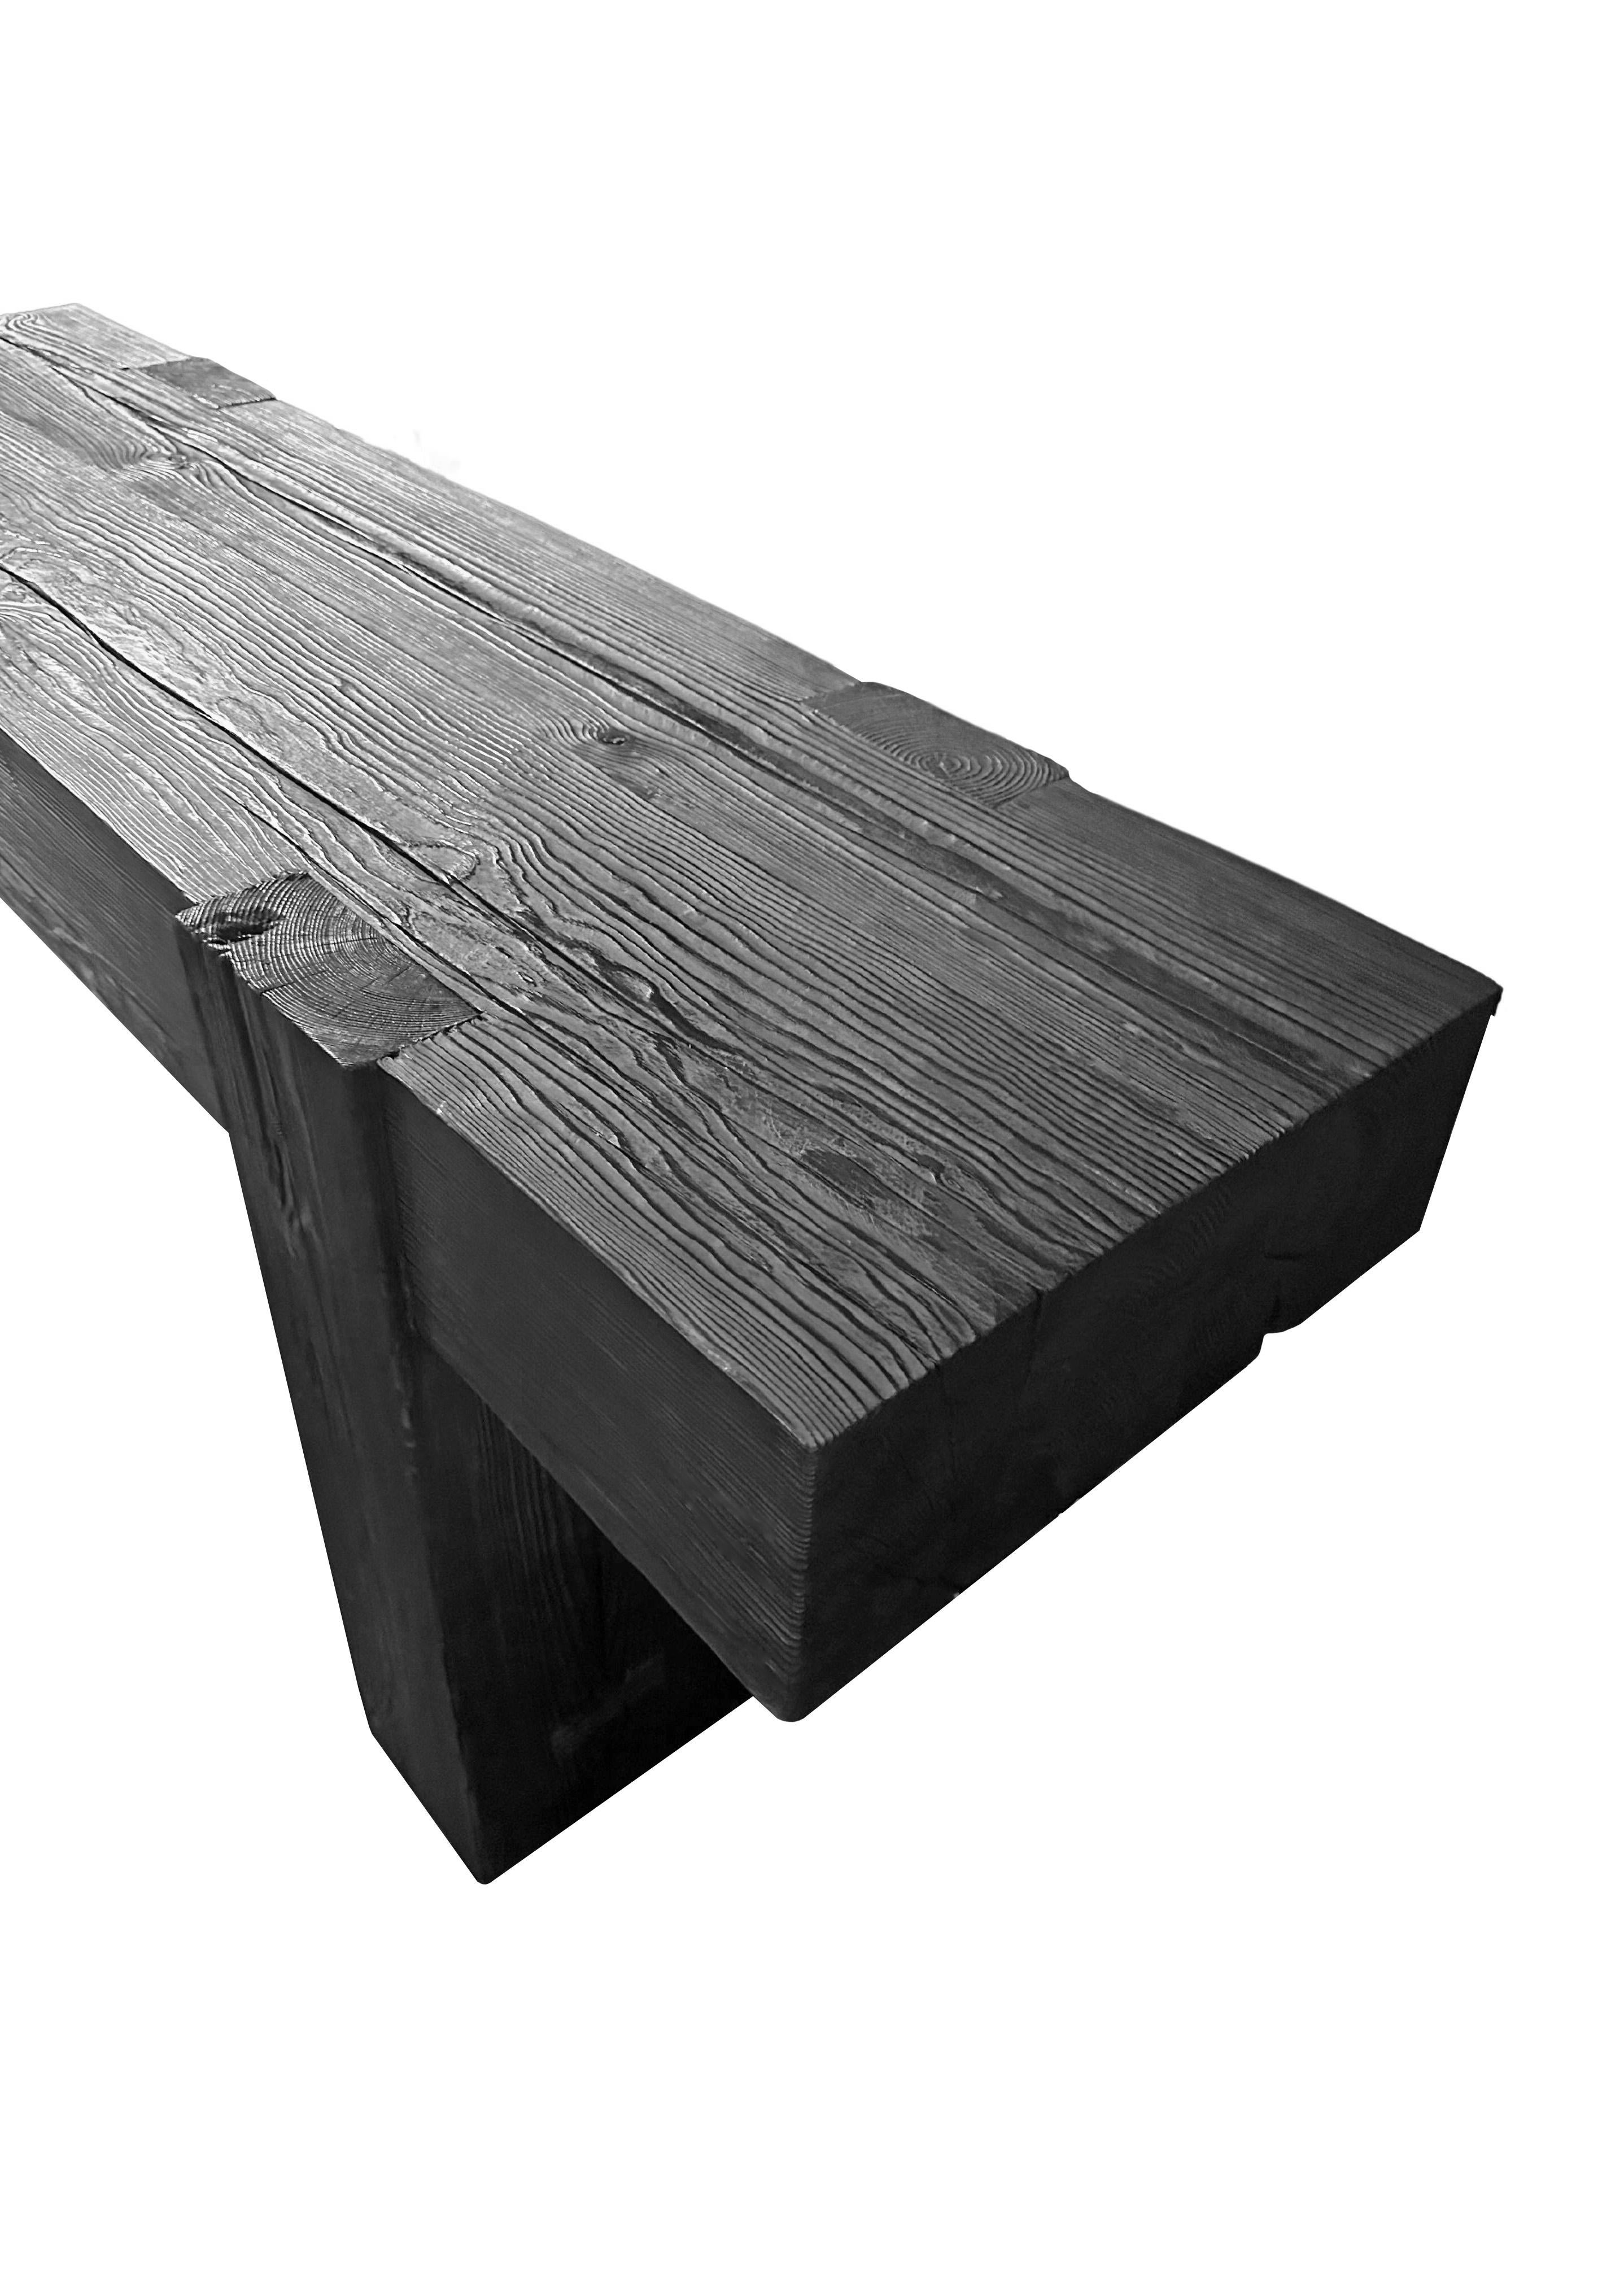 Console sculpturale en bois de teck massif. Le plateau de la table repose sur deux solides,  jambes. Un objet merveilleusement minimaliste. Pour obtenir son pigment unique, le bois a été brûlé plusieurs fois avant d'être recouvert d'une couche